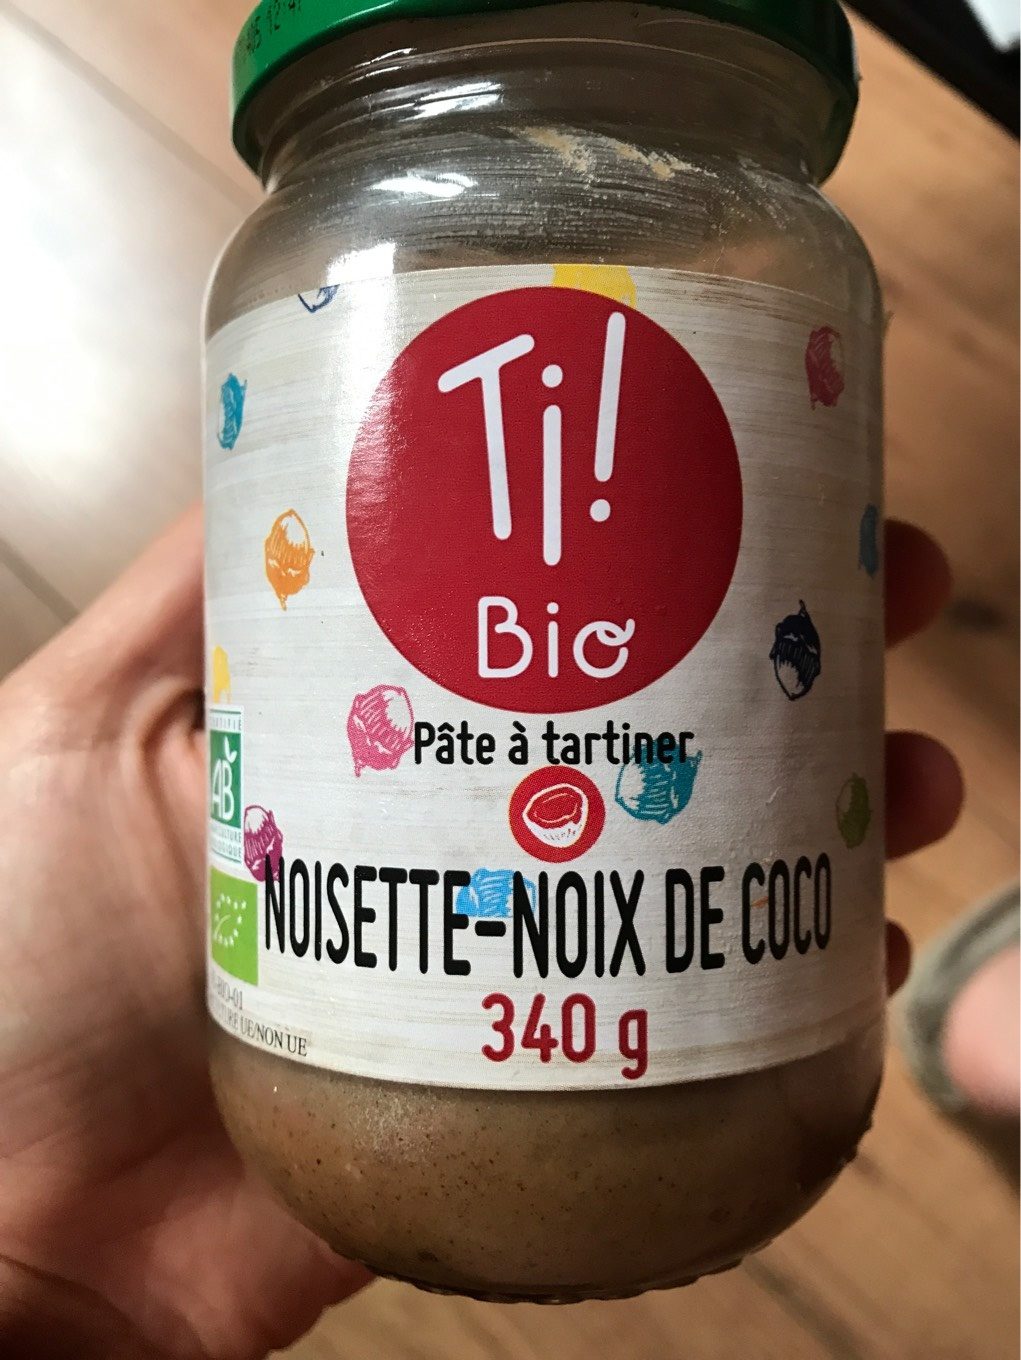 Noisette-noix de coco - Product - fr